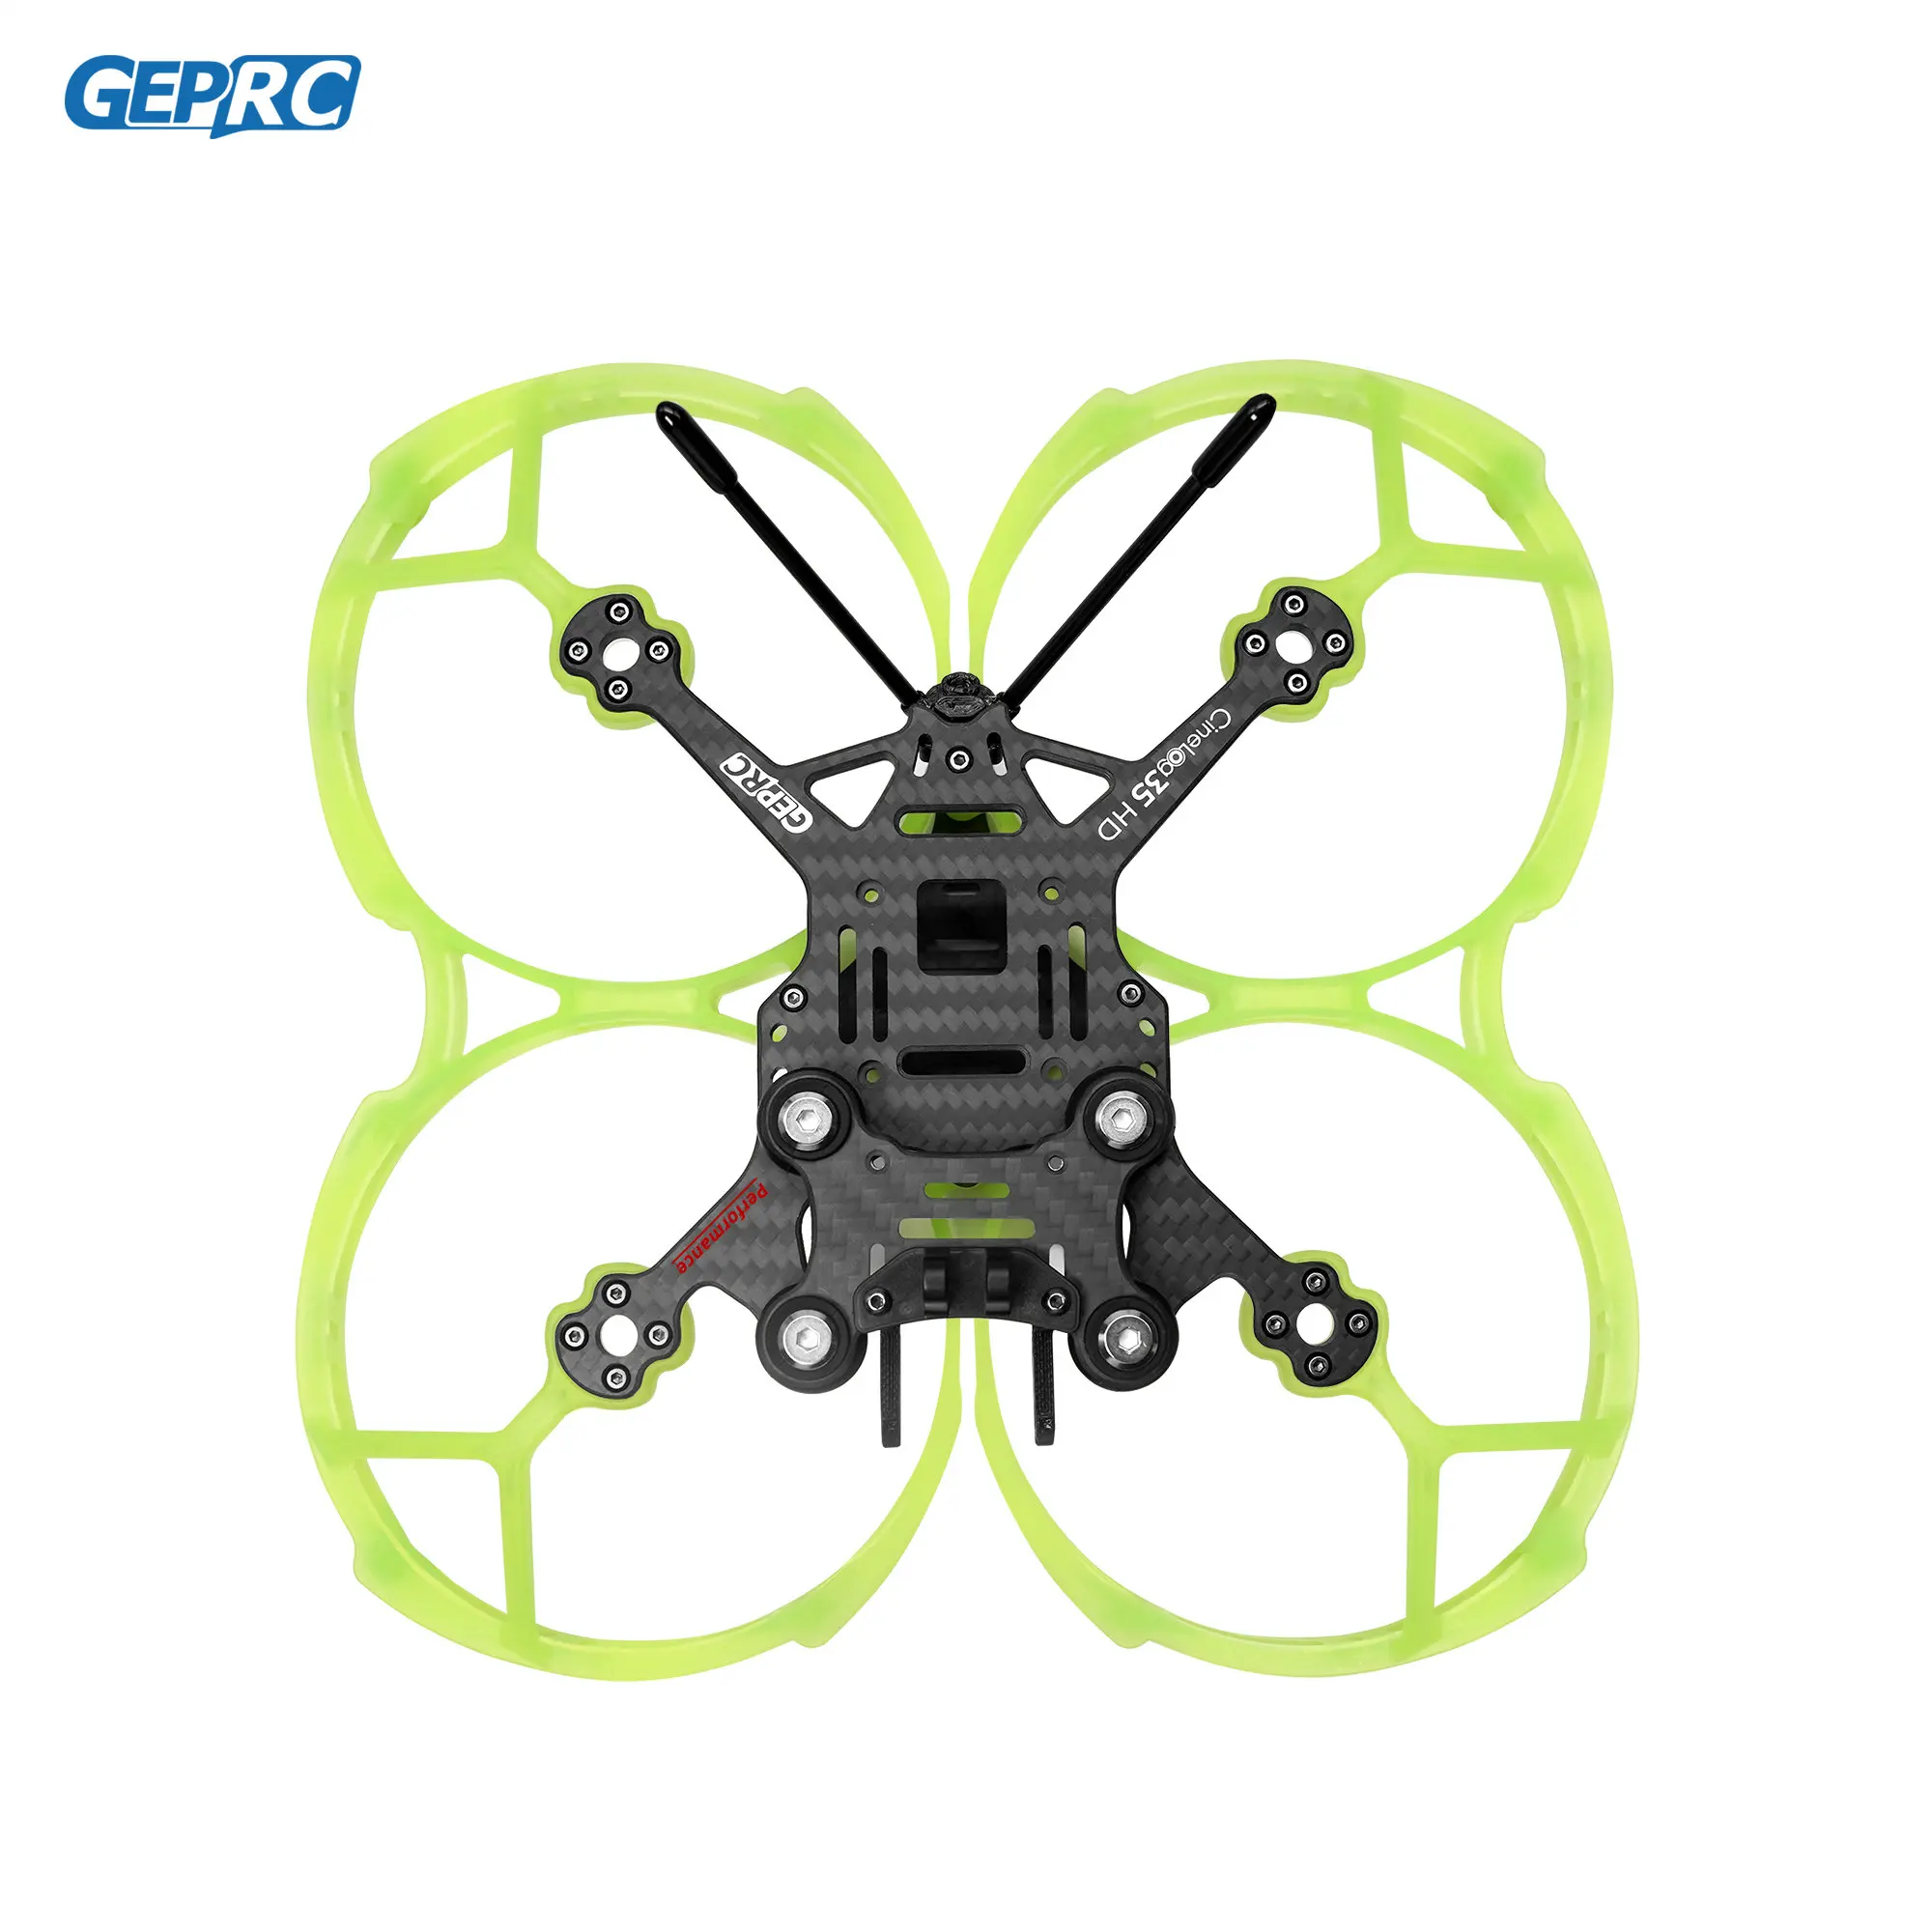 gprc-gep-cl35-desempenho-quadro-adequado-cinelog35-serie-zangao-de-fibra-carbono-rc-fpv-quadcopter-substituicao-acessorios-pecas